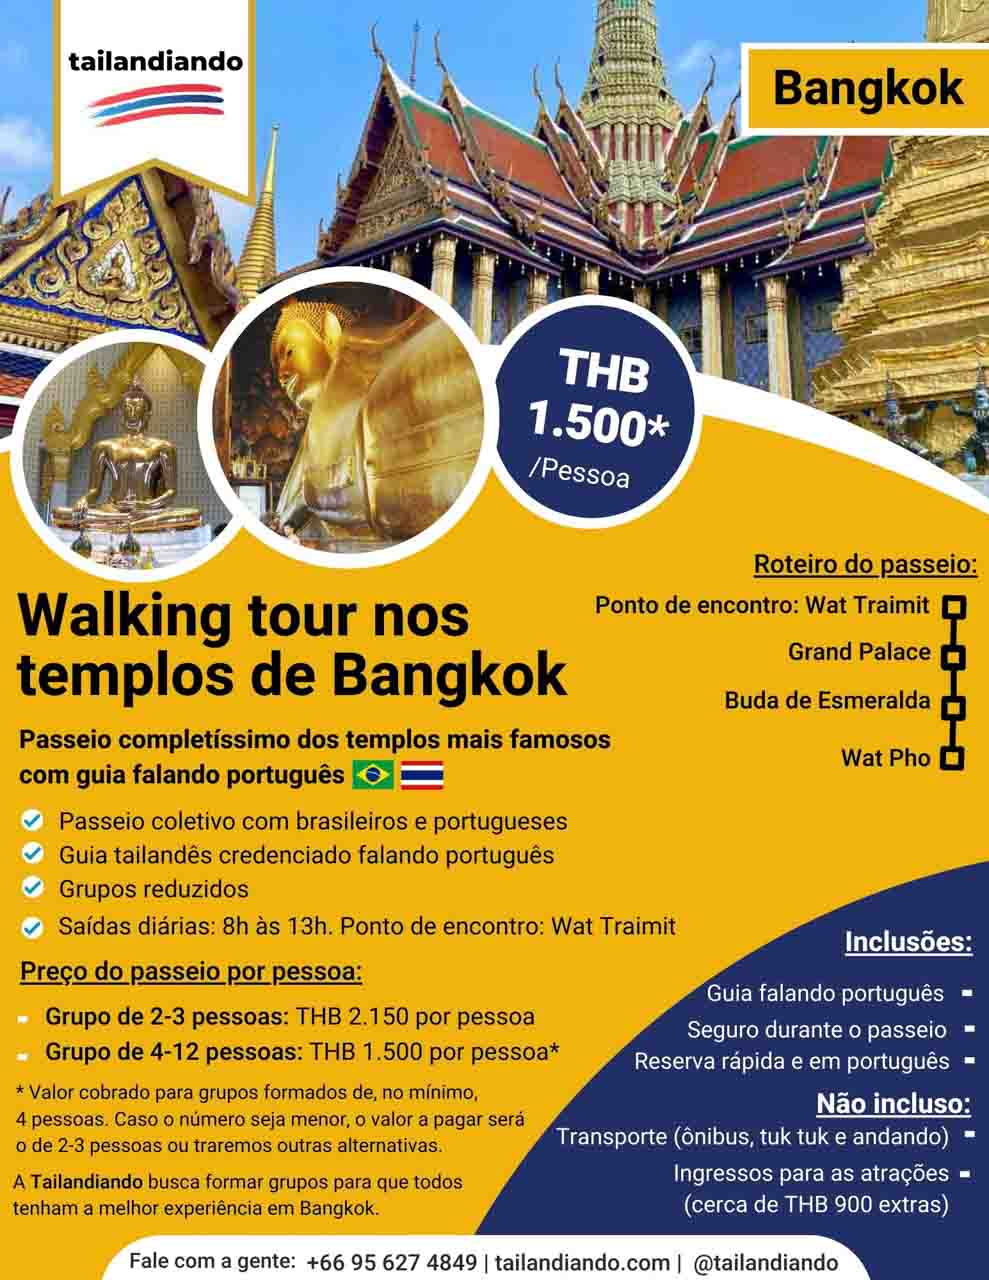 Walking Tour - caminhando pelos Templos de Bangkok com guia falando português - passeio com agência brasileira Tailandiando